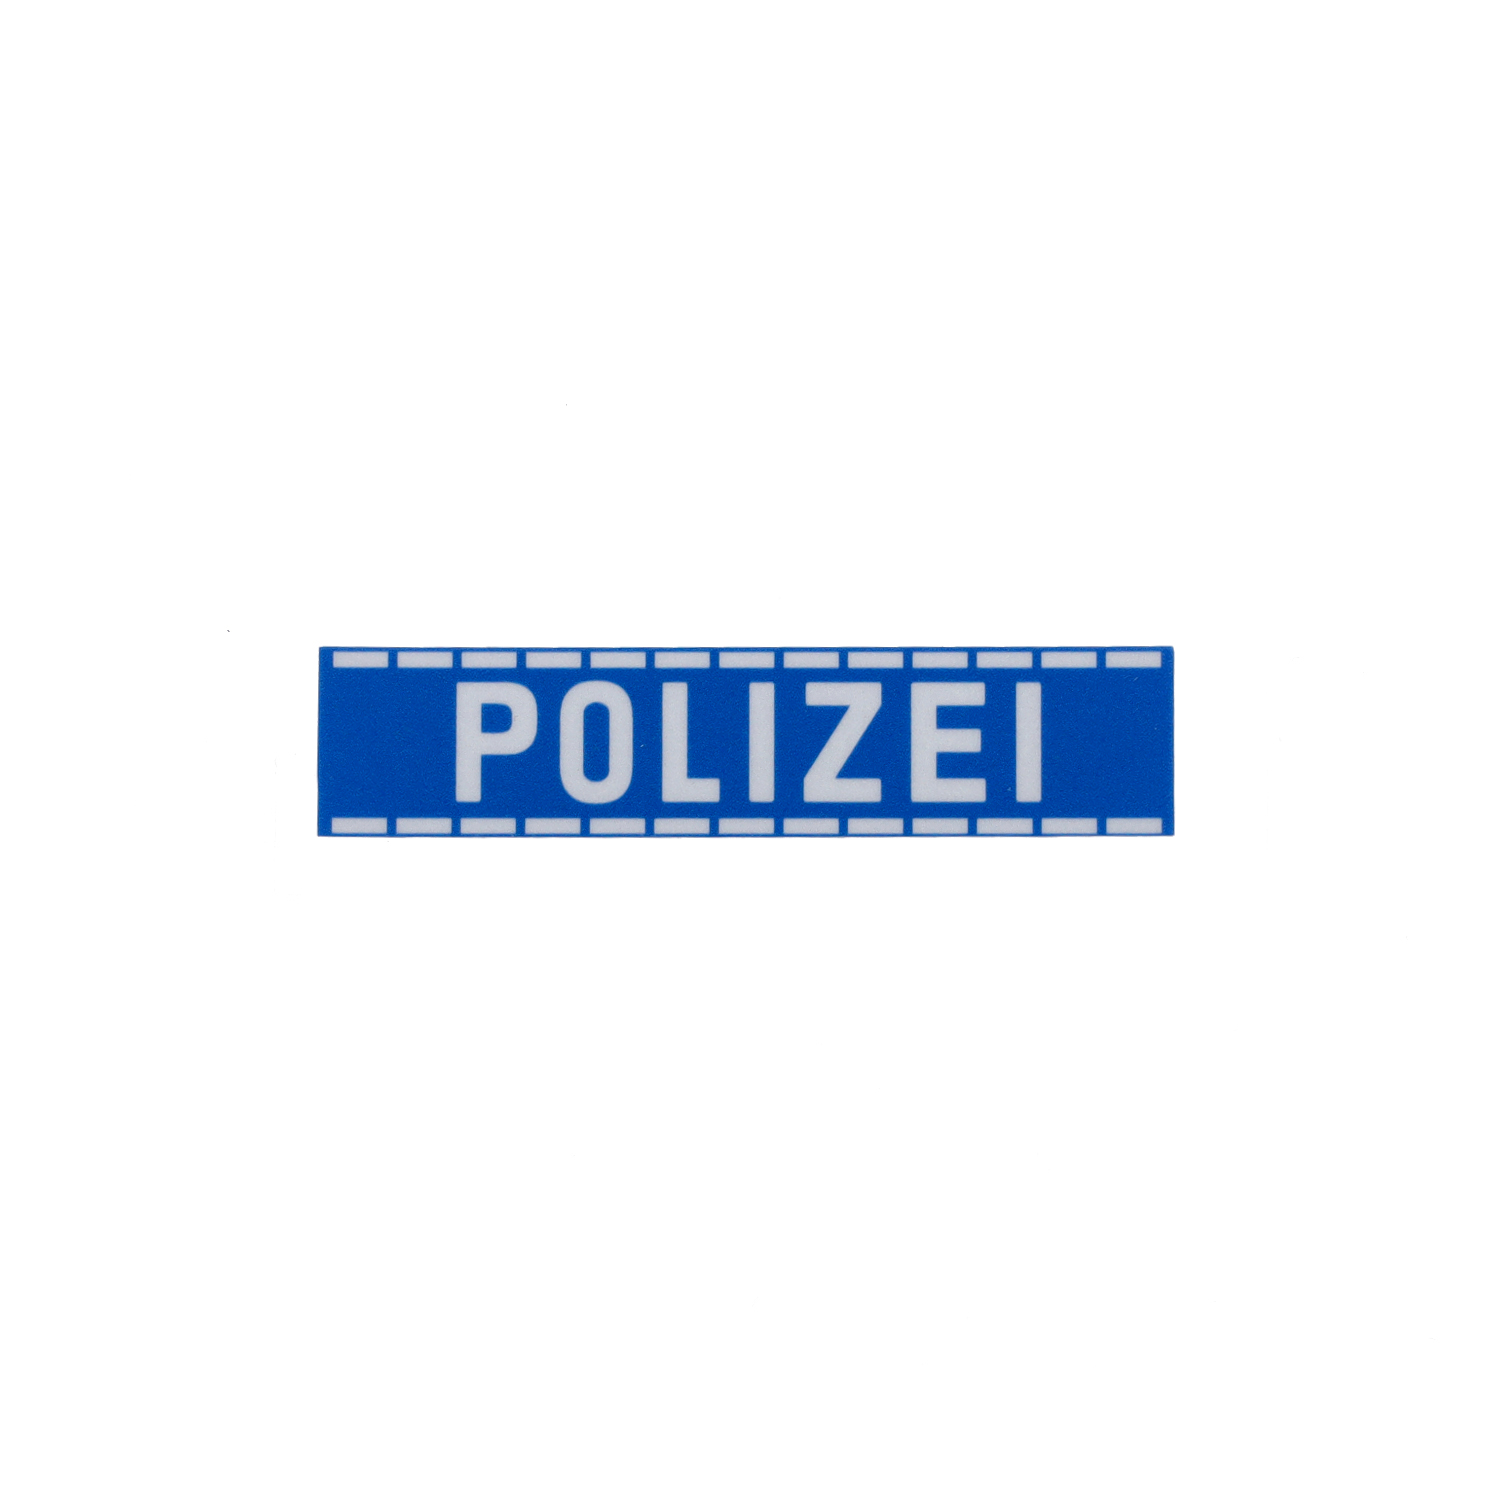 Reflektierende Aufkleber mit Gaps POLIZEI 18 x 81mm, Aufschriften, Uniformeffekte/Abzeichen, Polizei / Ordnungsbehörden